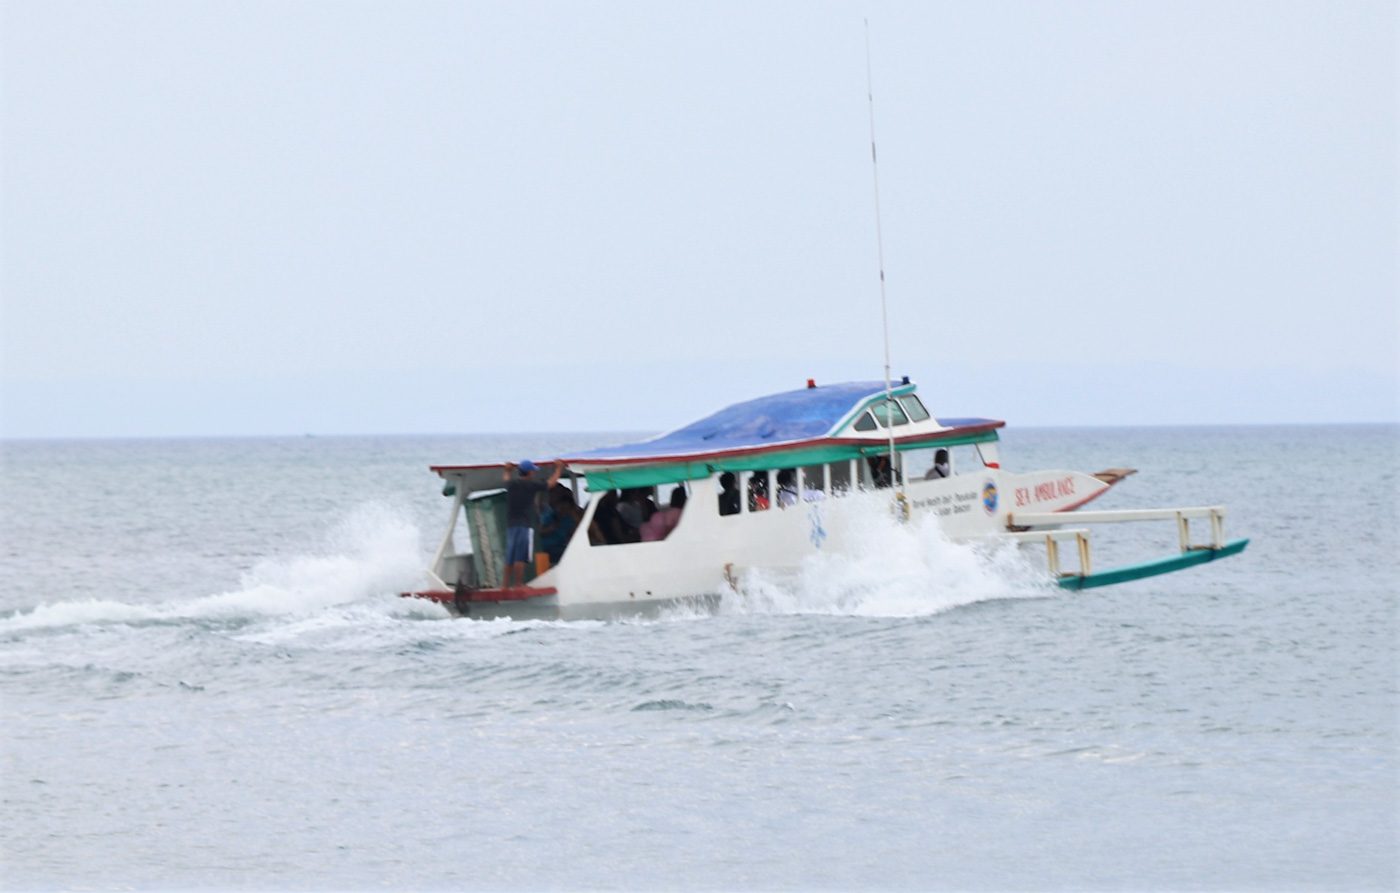 TEST RUN. Test run of Panukulan town's sea ambulance at 20 knots km/h. Photo courtesy of DOH-CALABARZON  